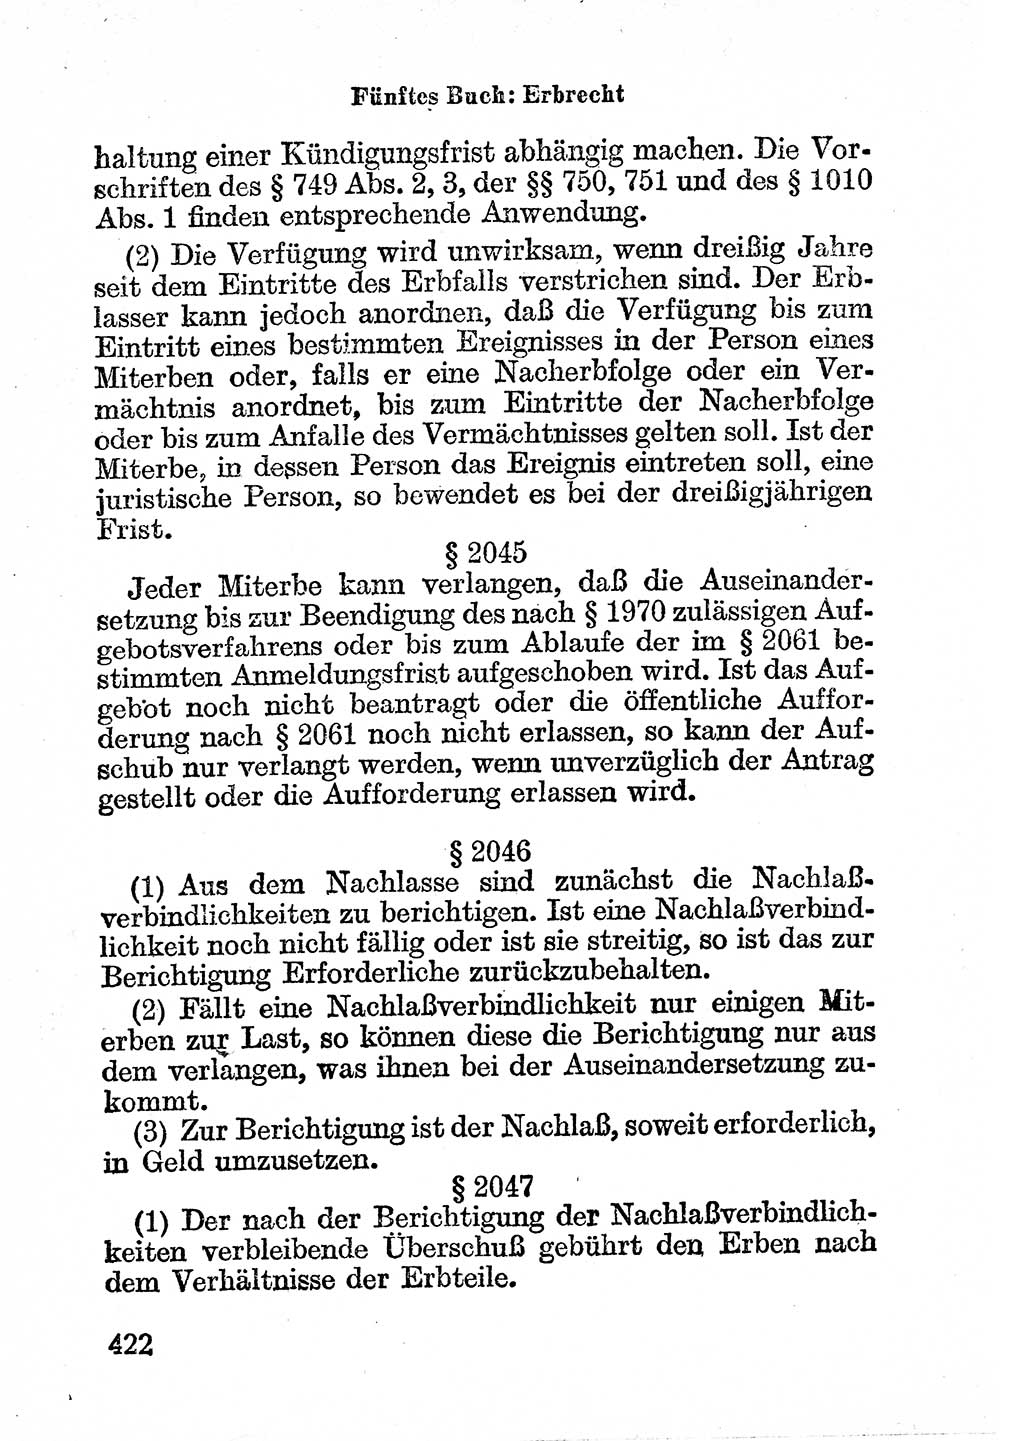 Bürgerliches Gesetzbuch (BGB) nebst wichtigen Nebengesetzen [Deutsche Demokratische Republik (DDR)] 1956, Seite 422 (BGB Nebenges. DDR 1956, S. 422)